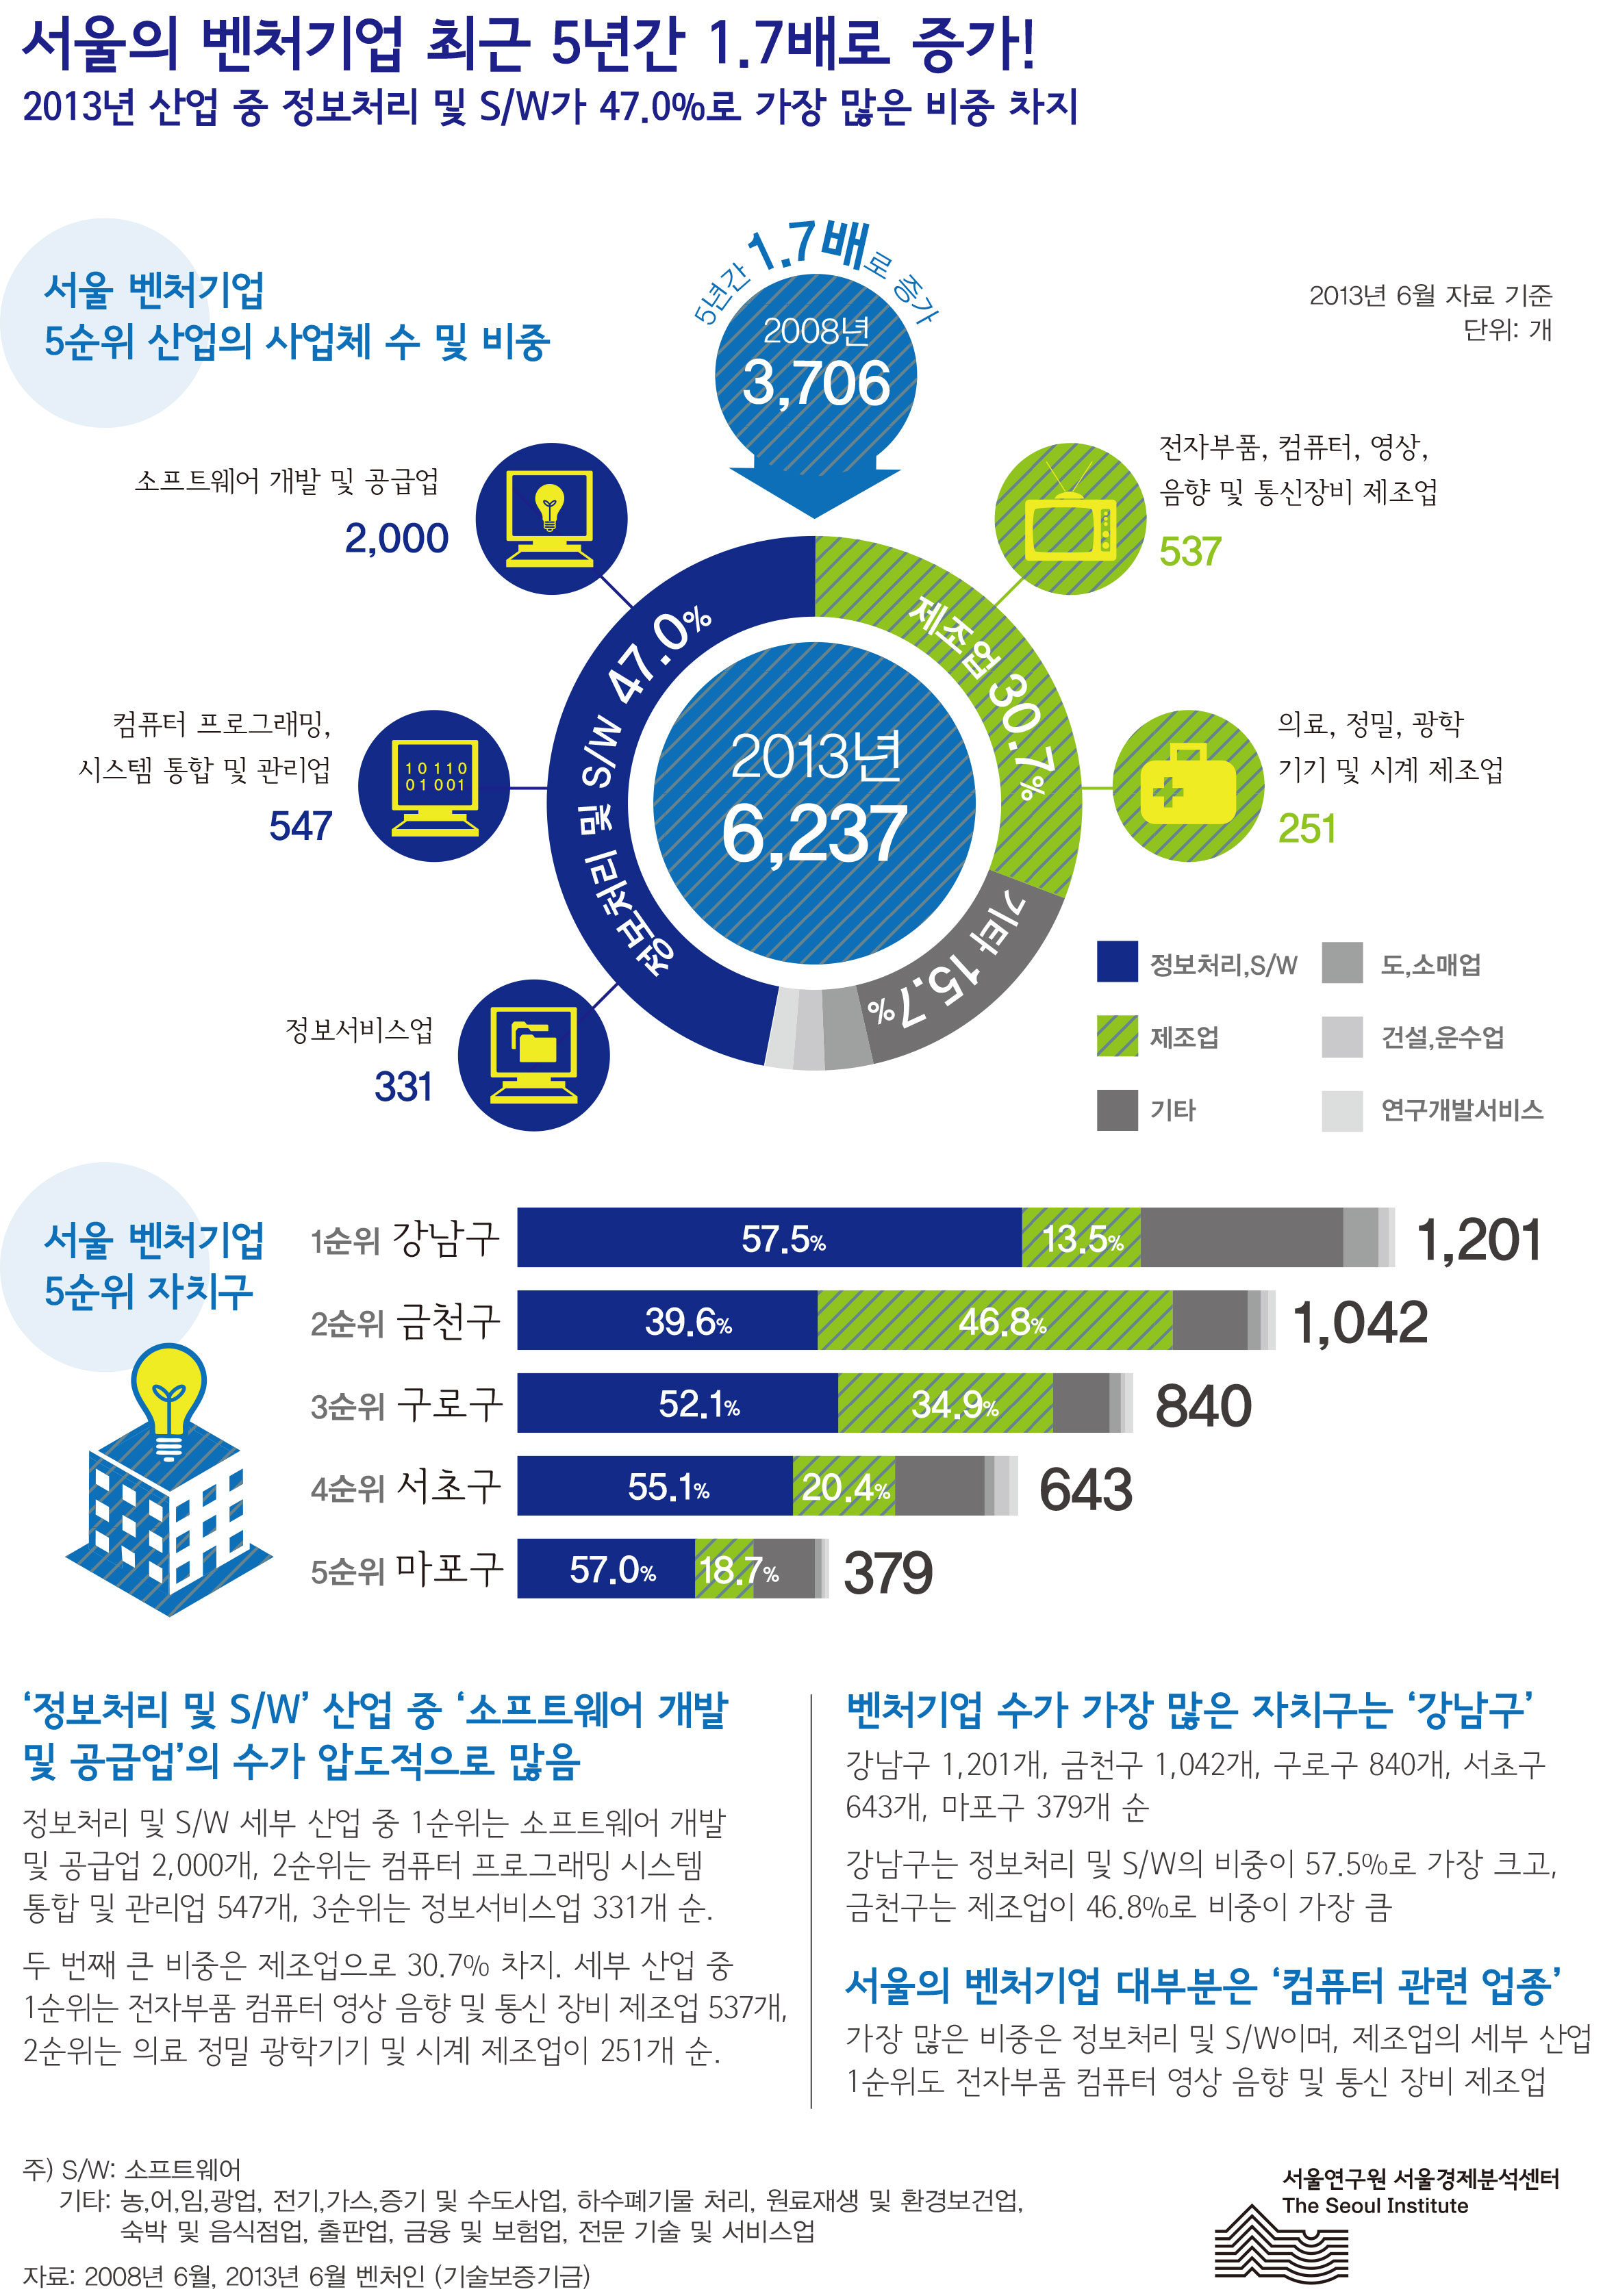 서울의 벤처기업 최근 5년간 1.7배로 증가 서울인포그래픽스 제44호 2013년 7월 29일 '정보처리 및 S/W’ 산업 중 ‘소프트웨어 개발 및 공급업’의 수가 압도적으로 많음, 정보처리 및 S/W 세부 산업 중 1순위는 소프트웨어 개발 및 공급업 2,000개, 2순위는 컴퓨터 프로그래밍 시스템 통합 및 관리업 547개, 3순위는 정보서비스업 331개 순,두 번째 큰 비중은 제조업으로 30.7% 차지. 세부 산업 중 1순위는 전자부품 컴퓨터 영상 음향 및 통신 장비 제조업 537개, 2순위는 의료 정밀 광학기기 및 시계 제조업이 251개 순으로 정리될 수 있습니다. 인포그래픽으로 제공되는 그래픽은 하단에 표로 자세히 제공됩니다.